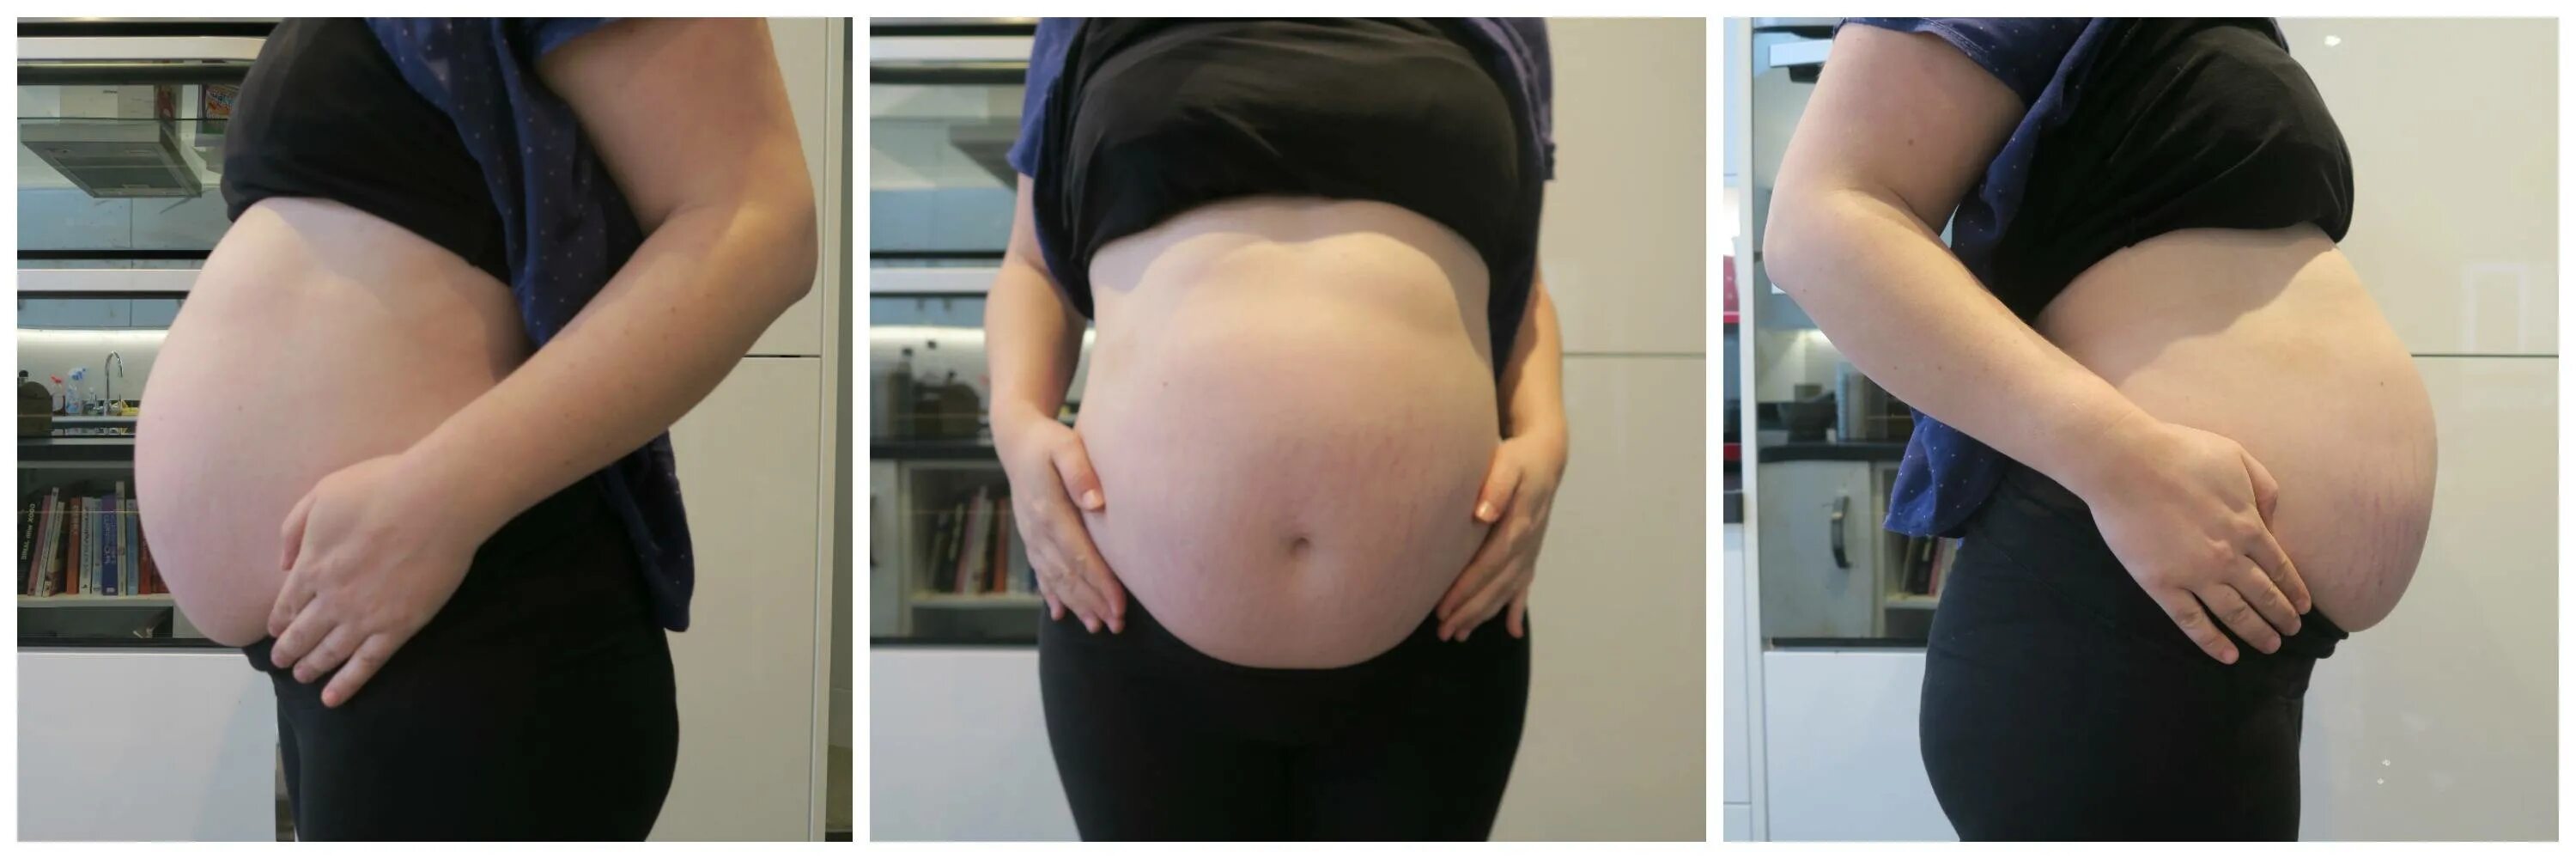 Живот на 31 неделе беременности. Живот беременной на 31 неделе. Ребенок толкается в животе. Живот на 30 неделе беременности.